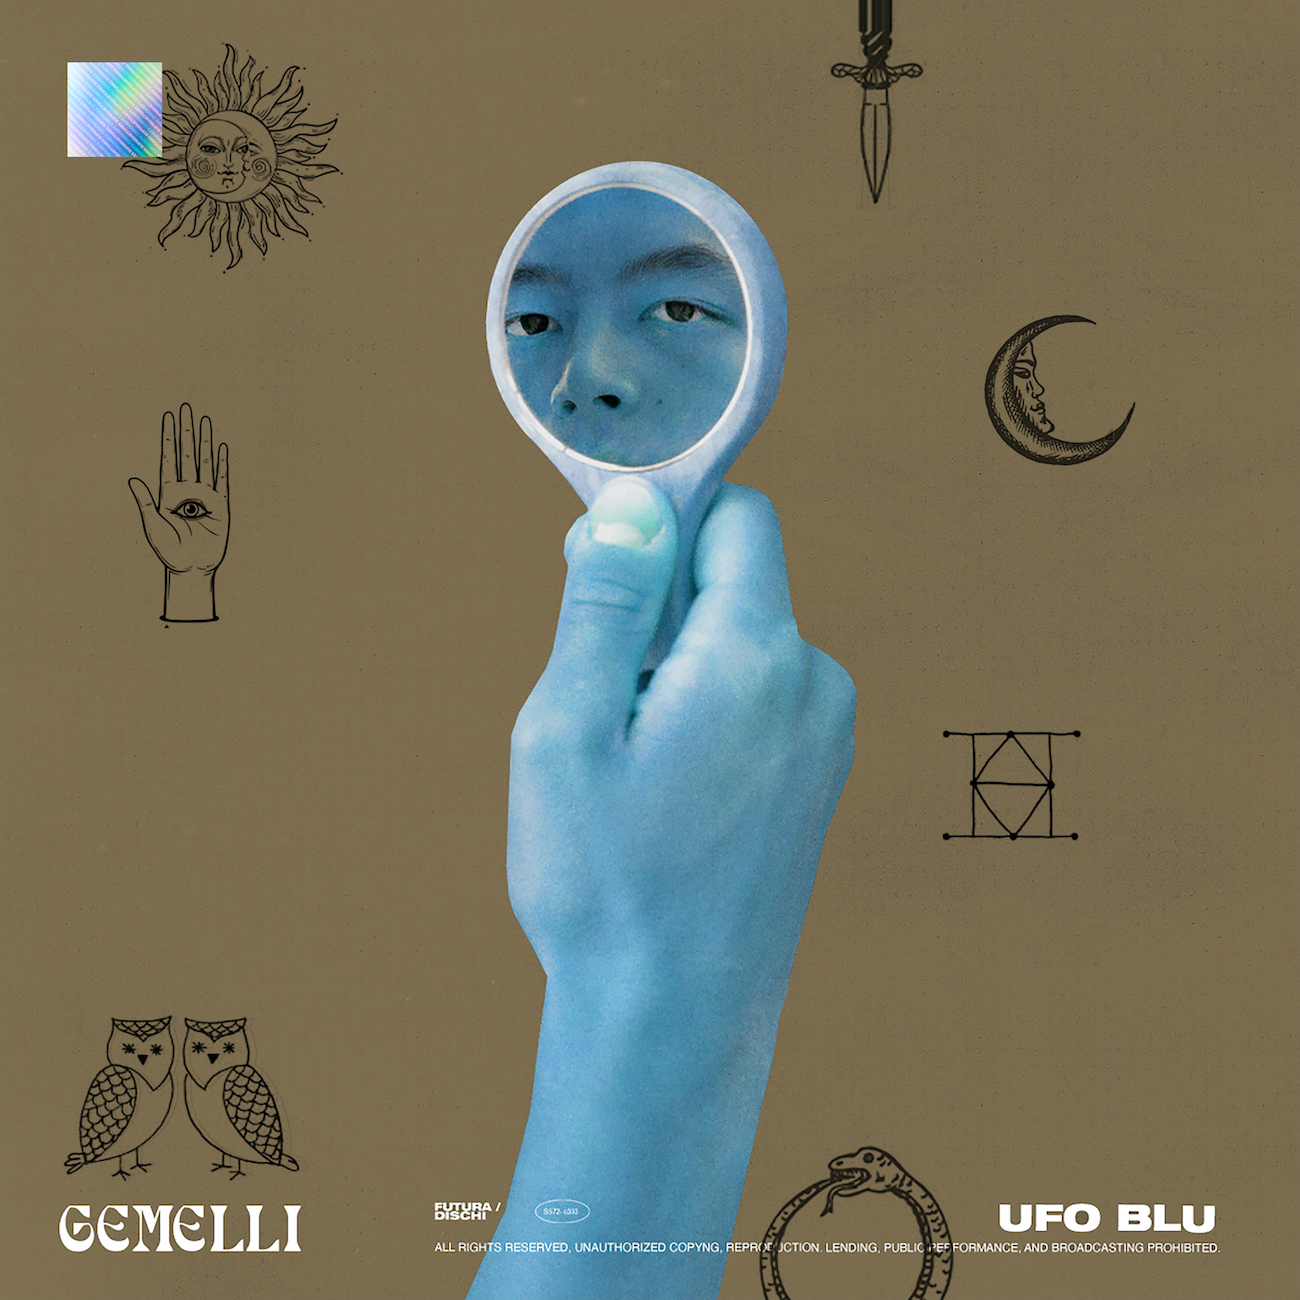 Ufo Blu, fuori per Futura Dischi il nuovo singolo “Gemelli”. Amore e zodiaco si mescolano nel future pop della band bergamasca